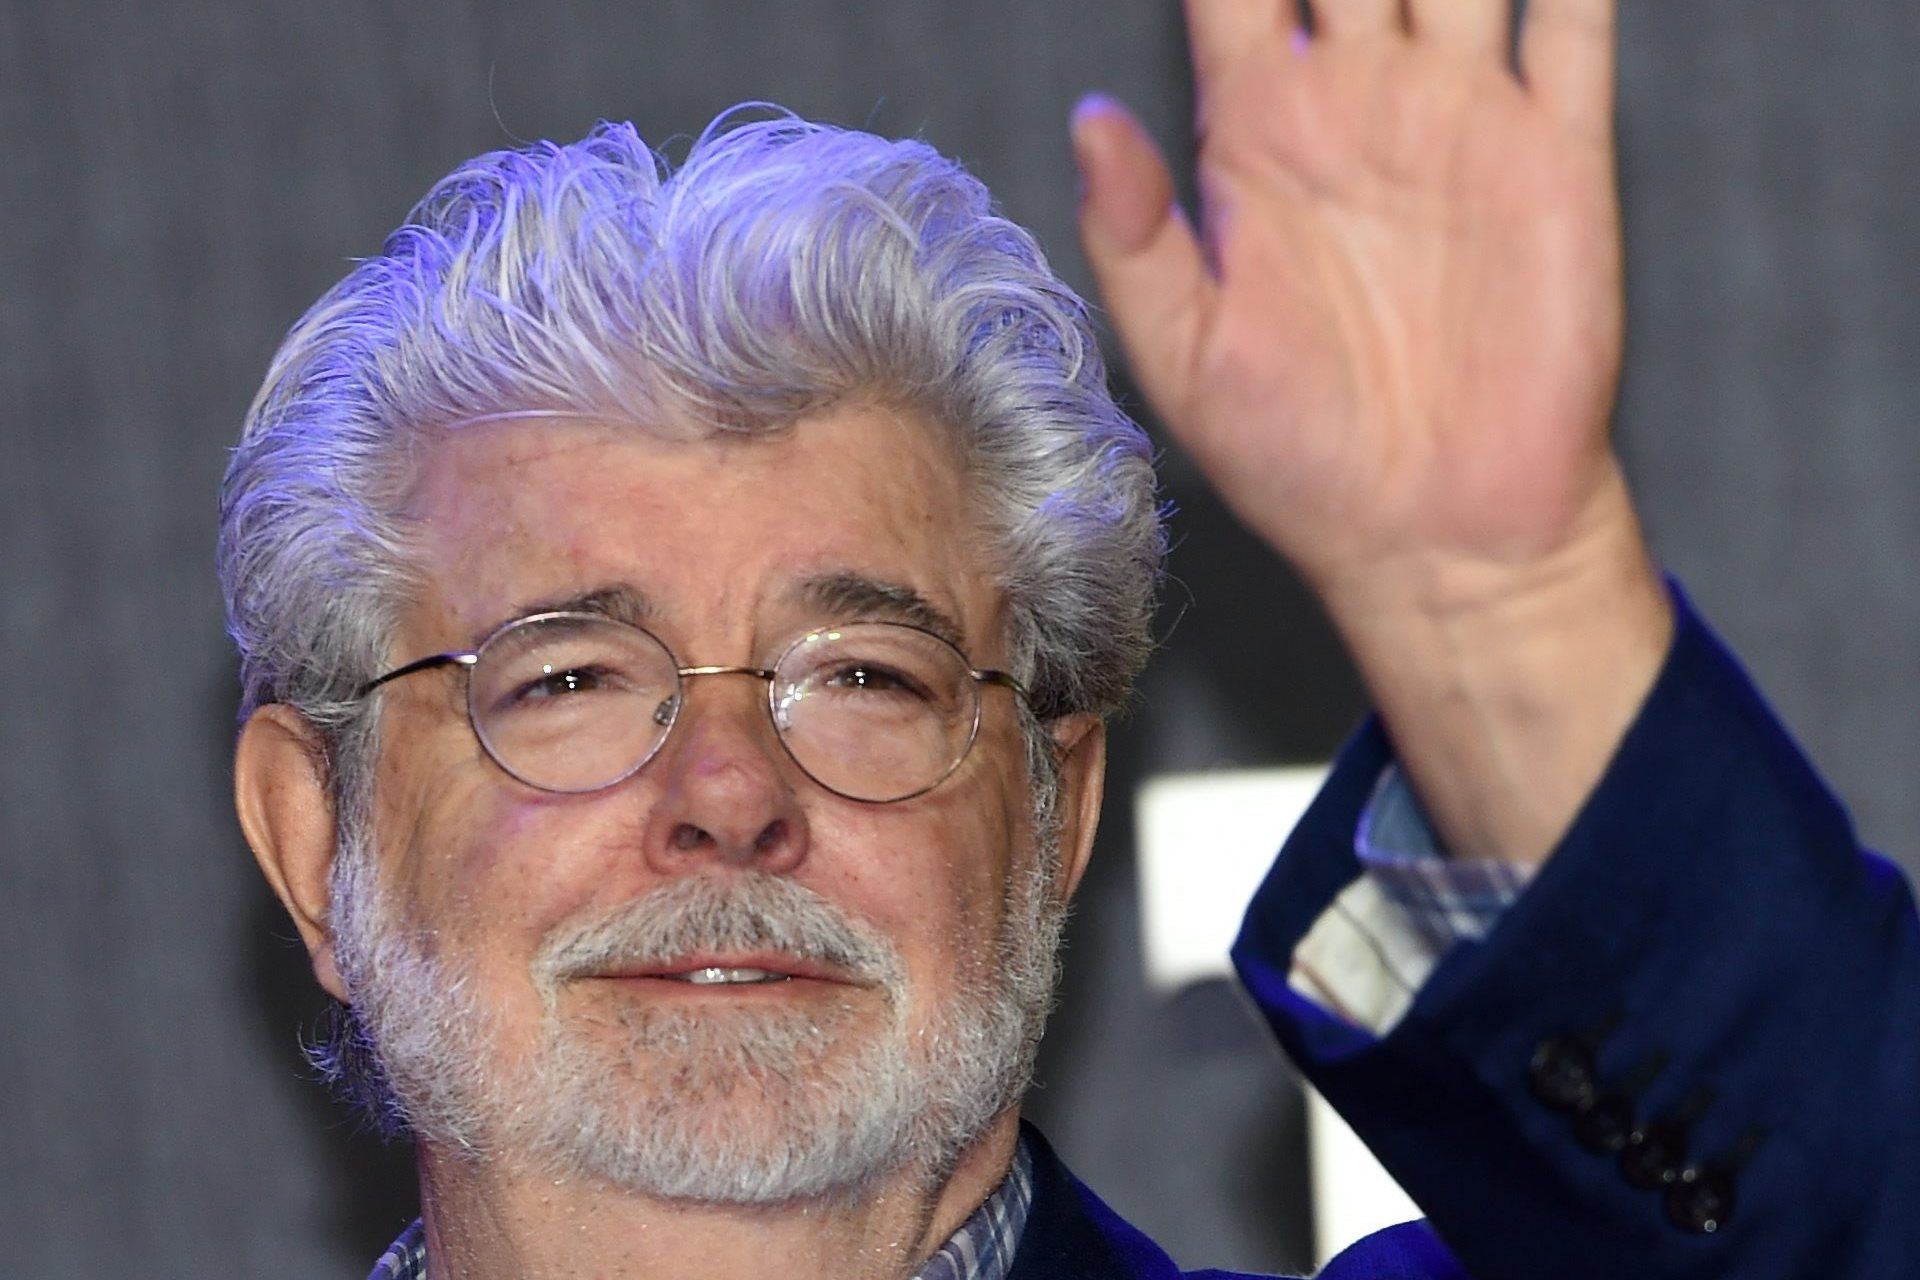 George Lucas recibirá la Palma de Oro de Honor en el Festival de Cannes